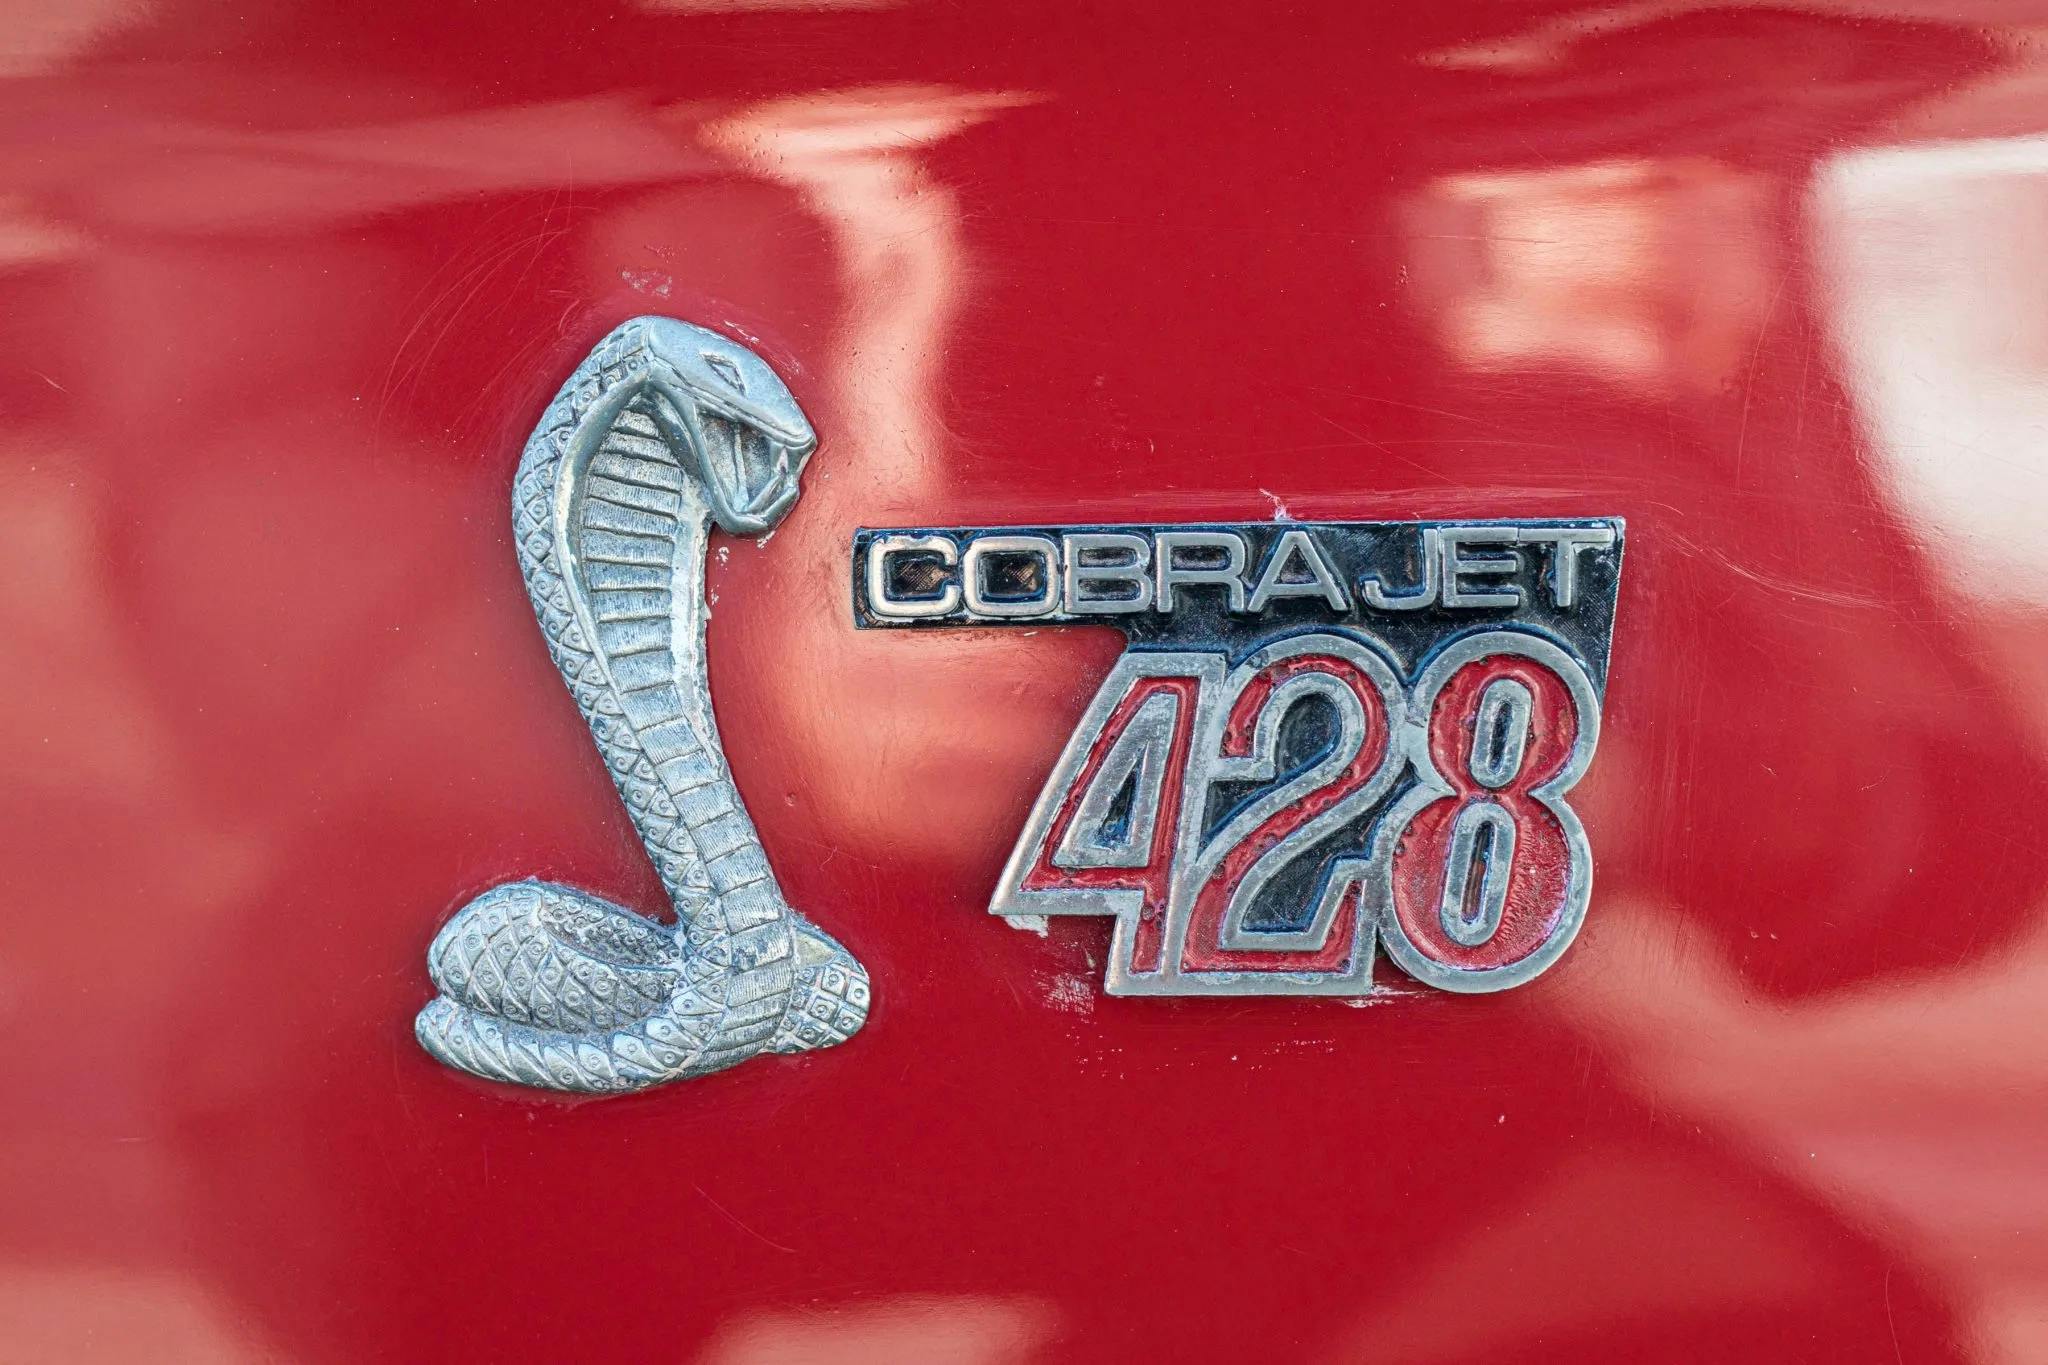 1968 Shelby GT500 KR emblem